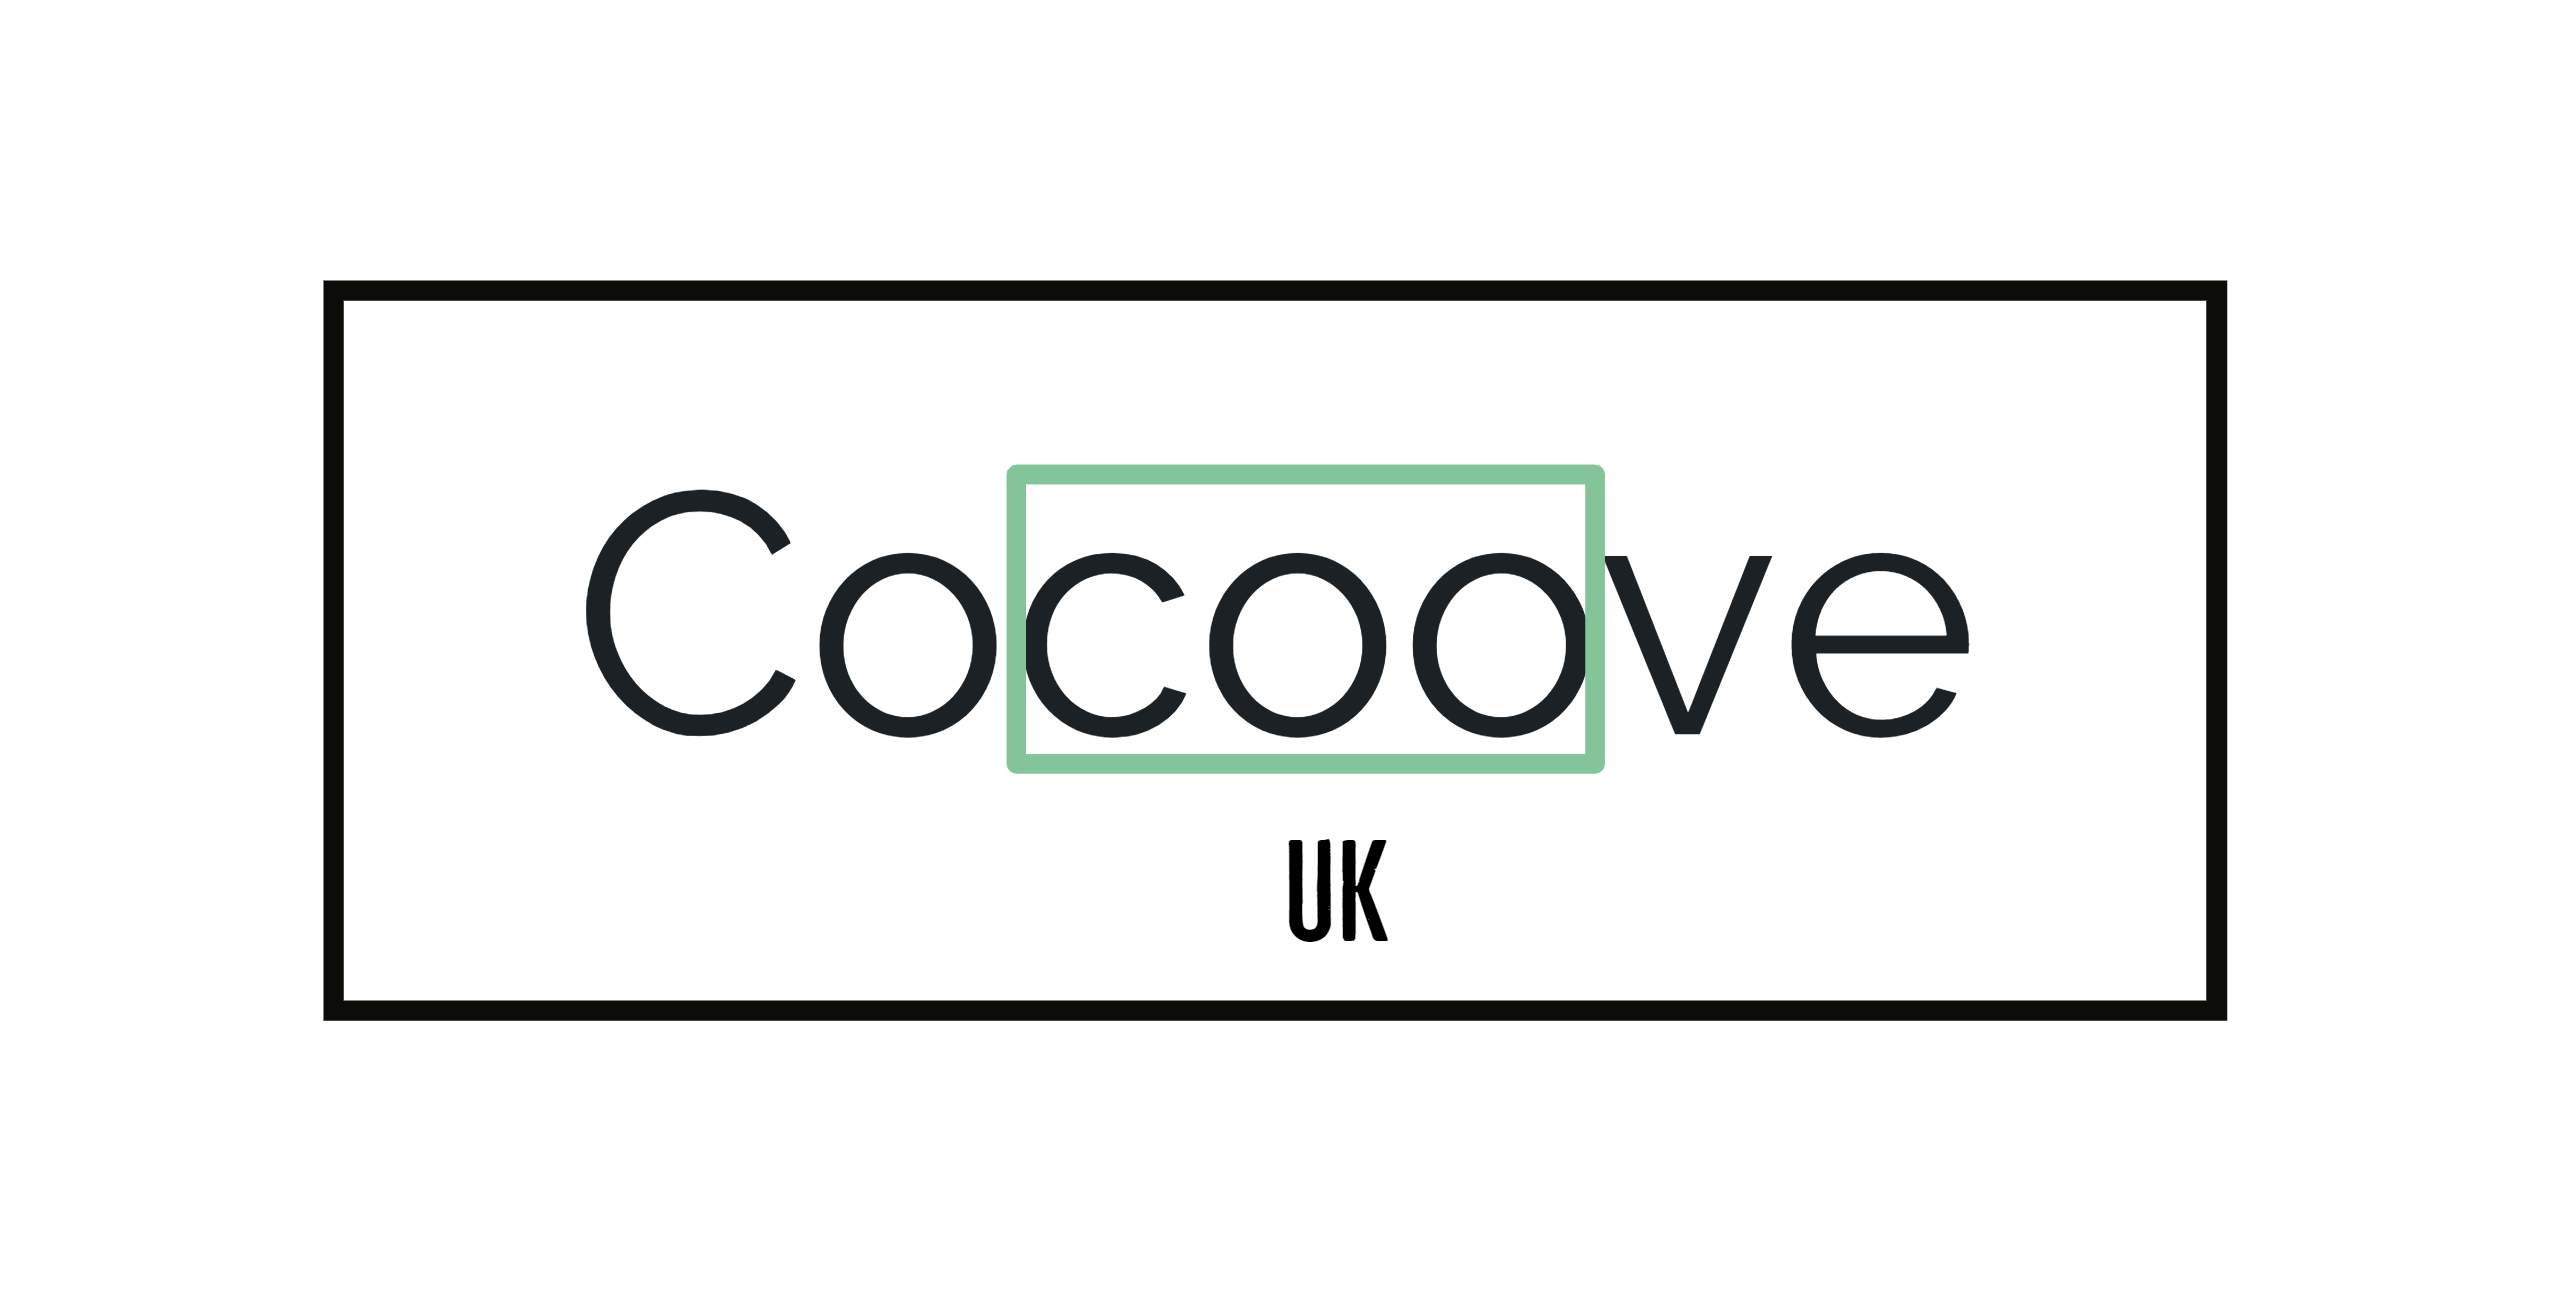 Cocoove